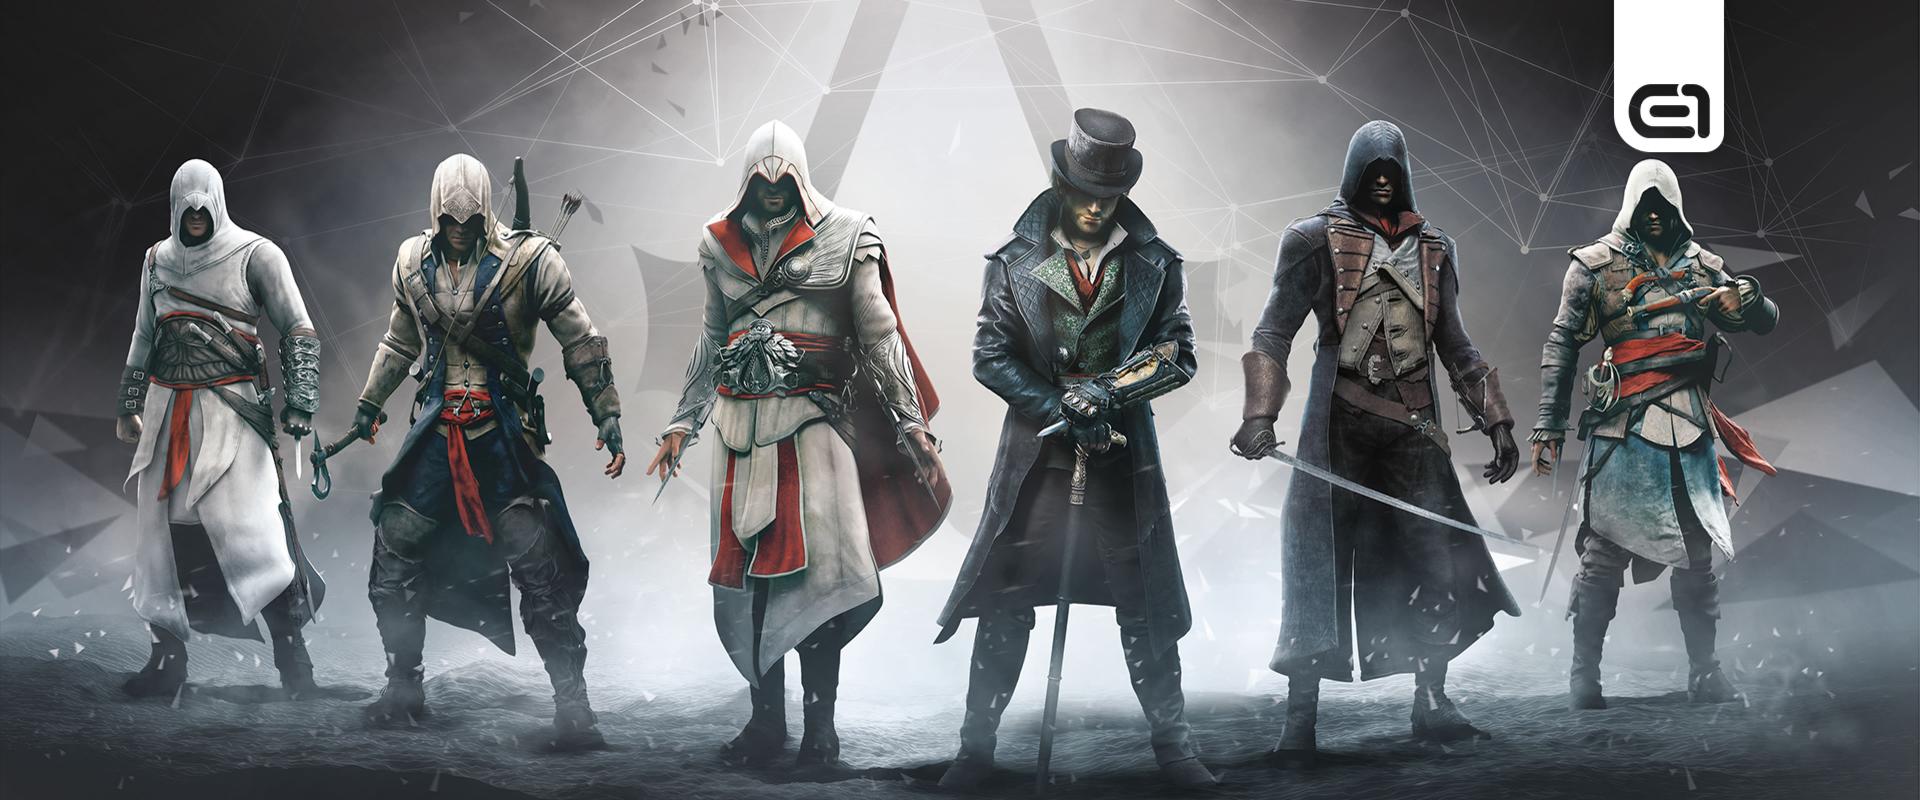 Íme az Assassin's Creed-történelem pontos idővonala